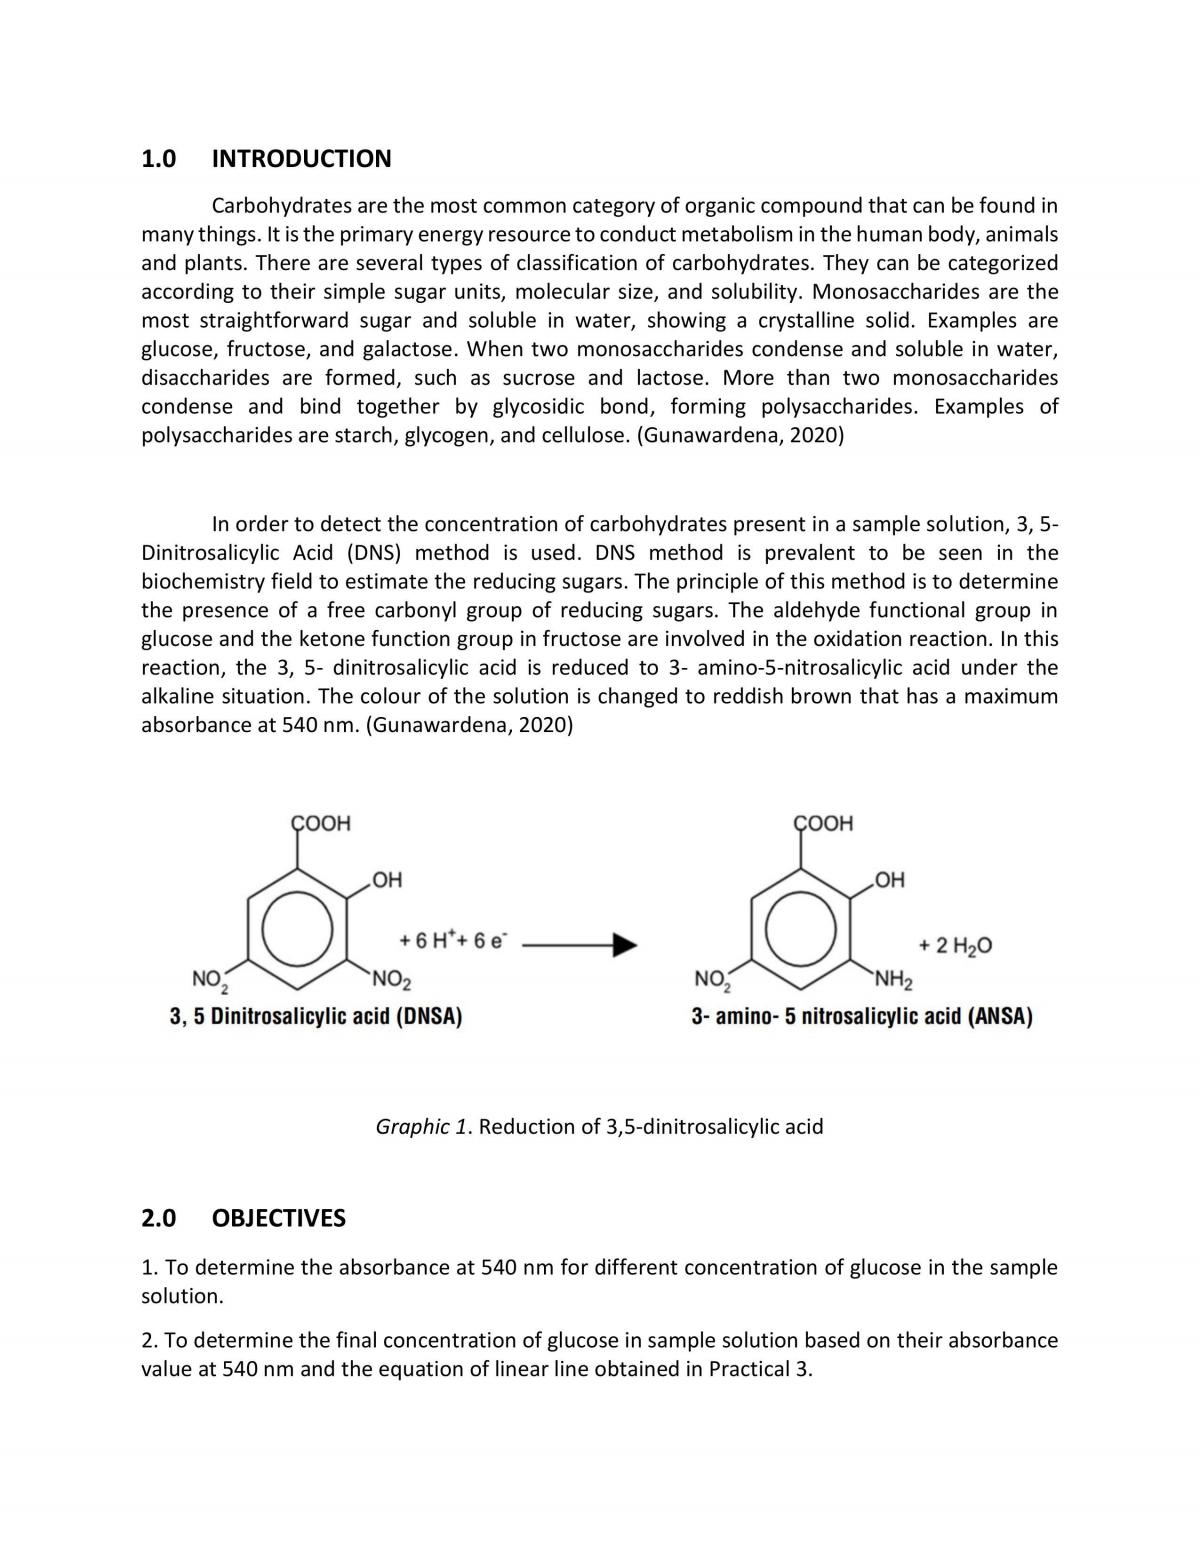 case study 2 biochemistry unimas